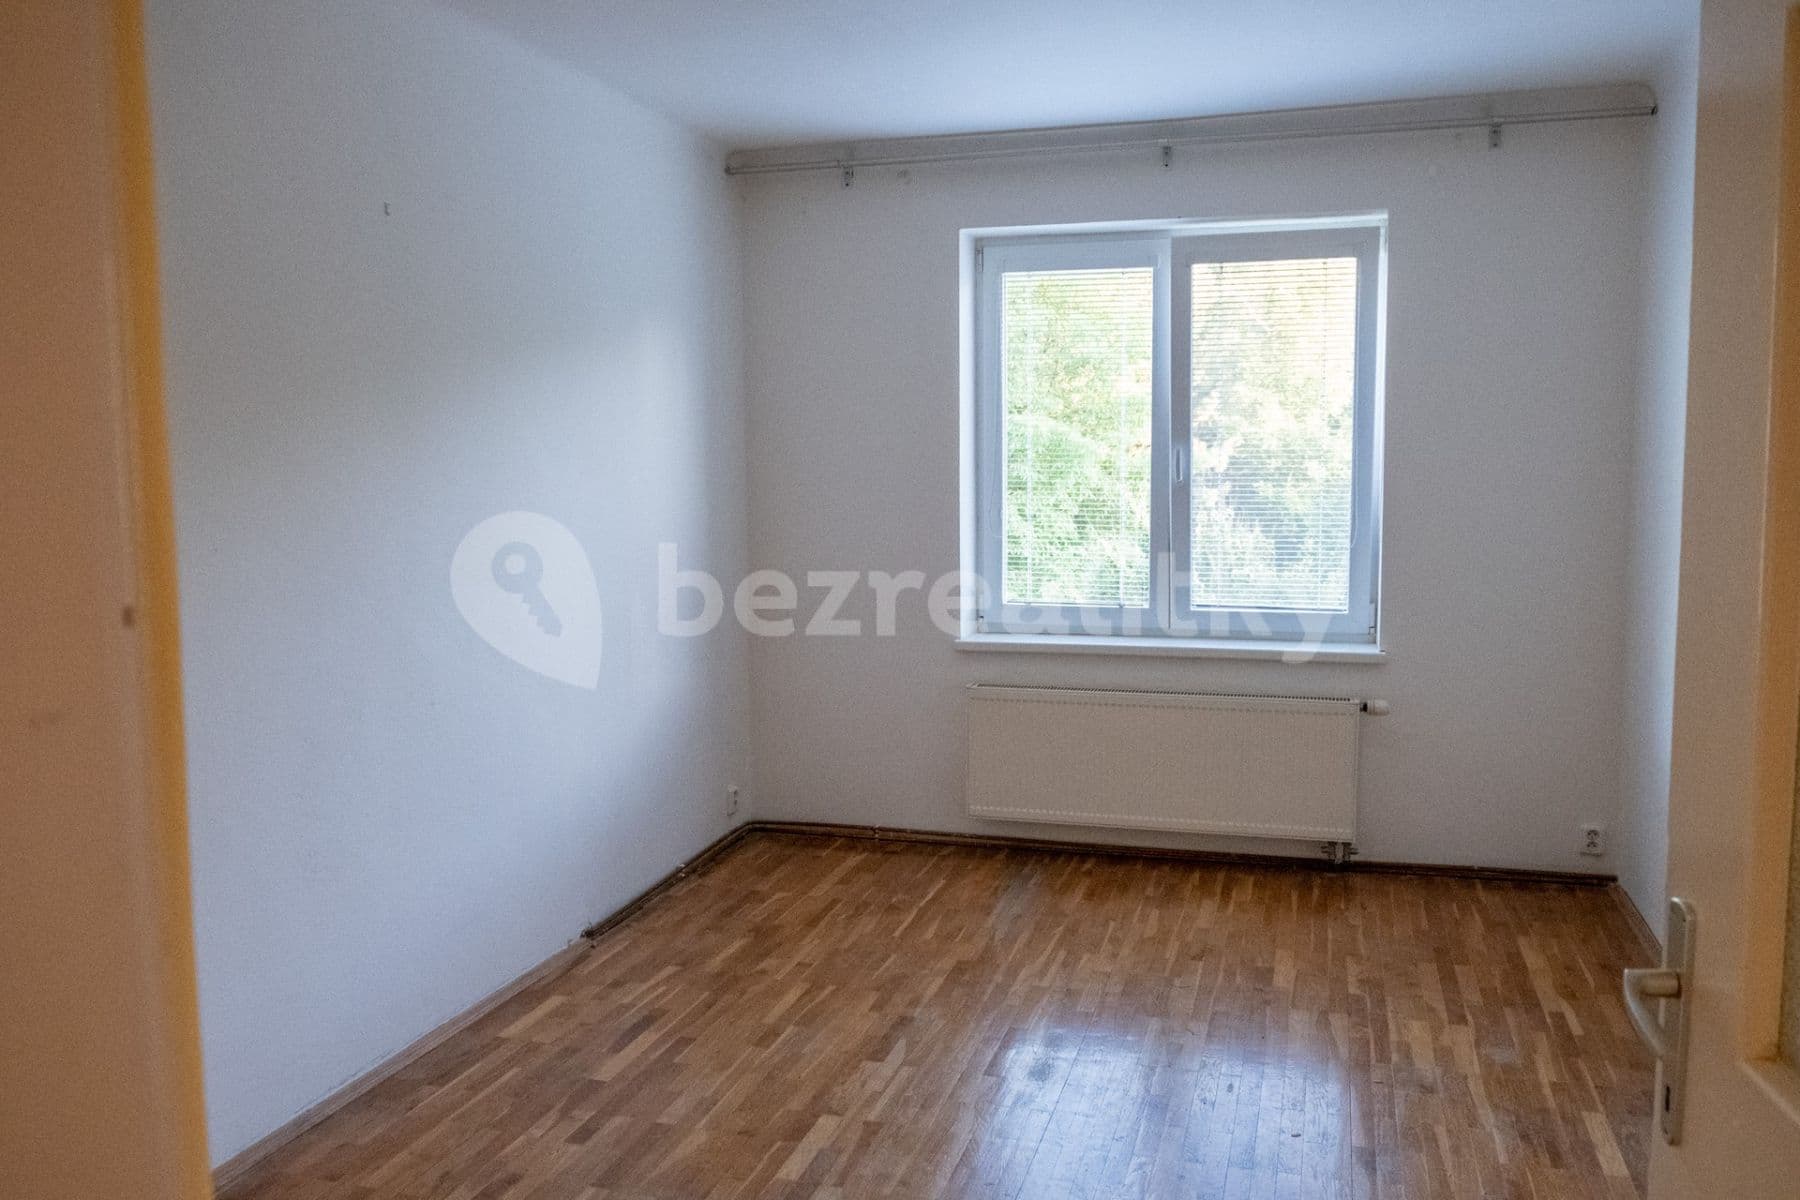 2 bedroom with open-plan kitchen flat to rent, 85 m², Slovanské údolí, Plzeň, Plzeňský Region